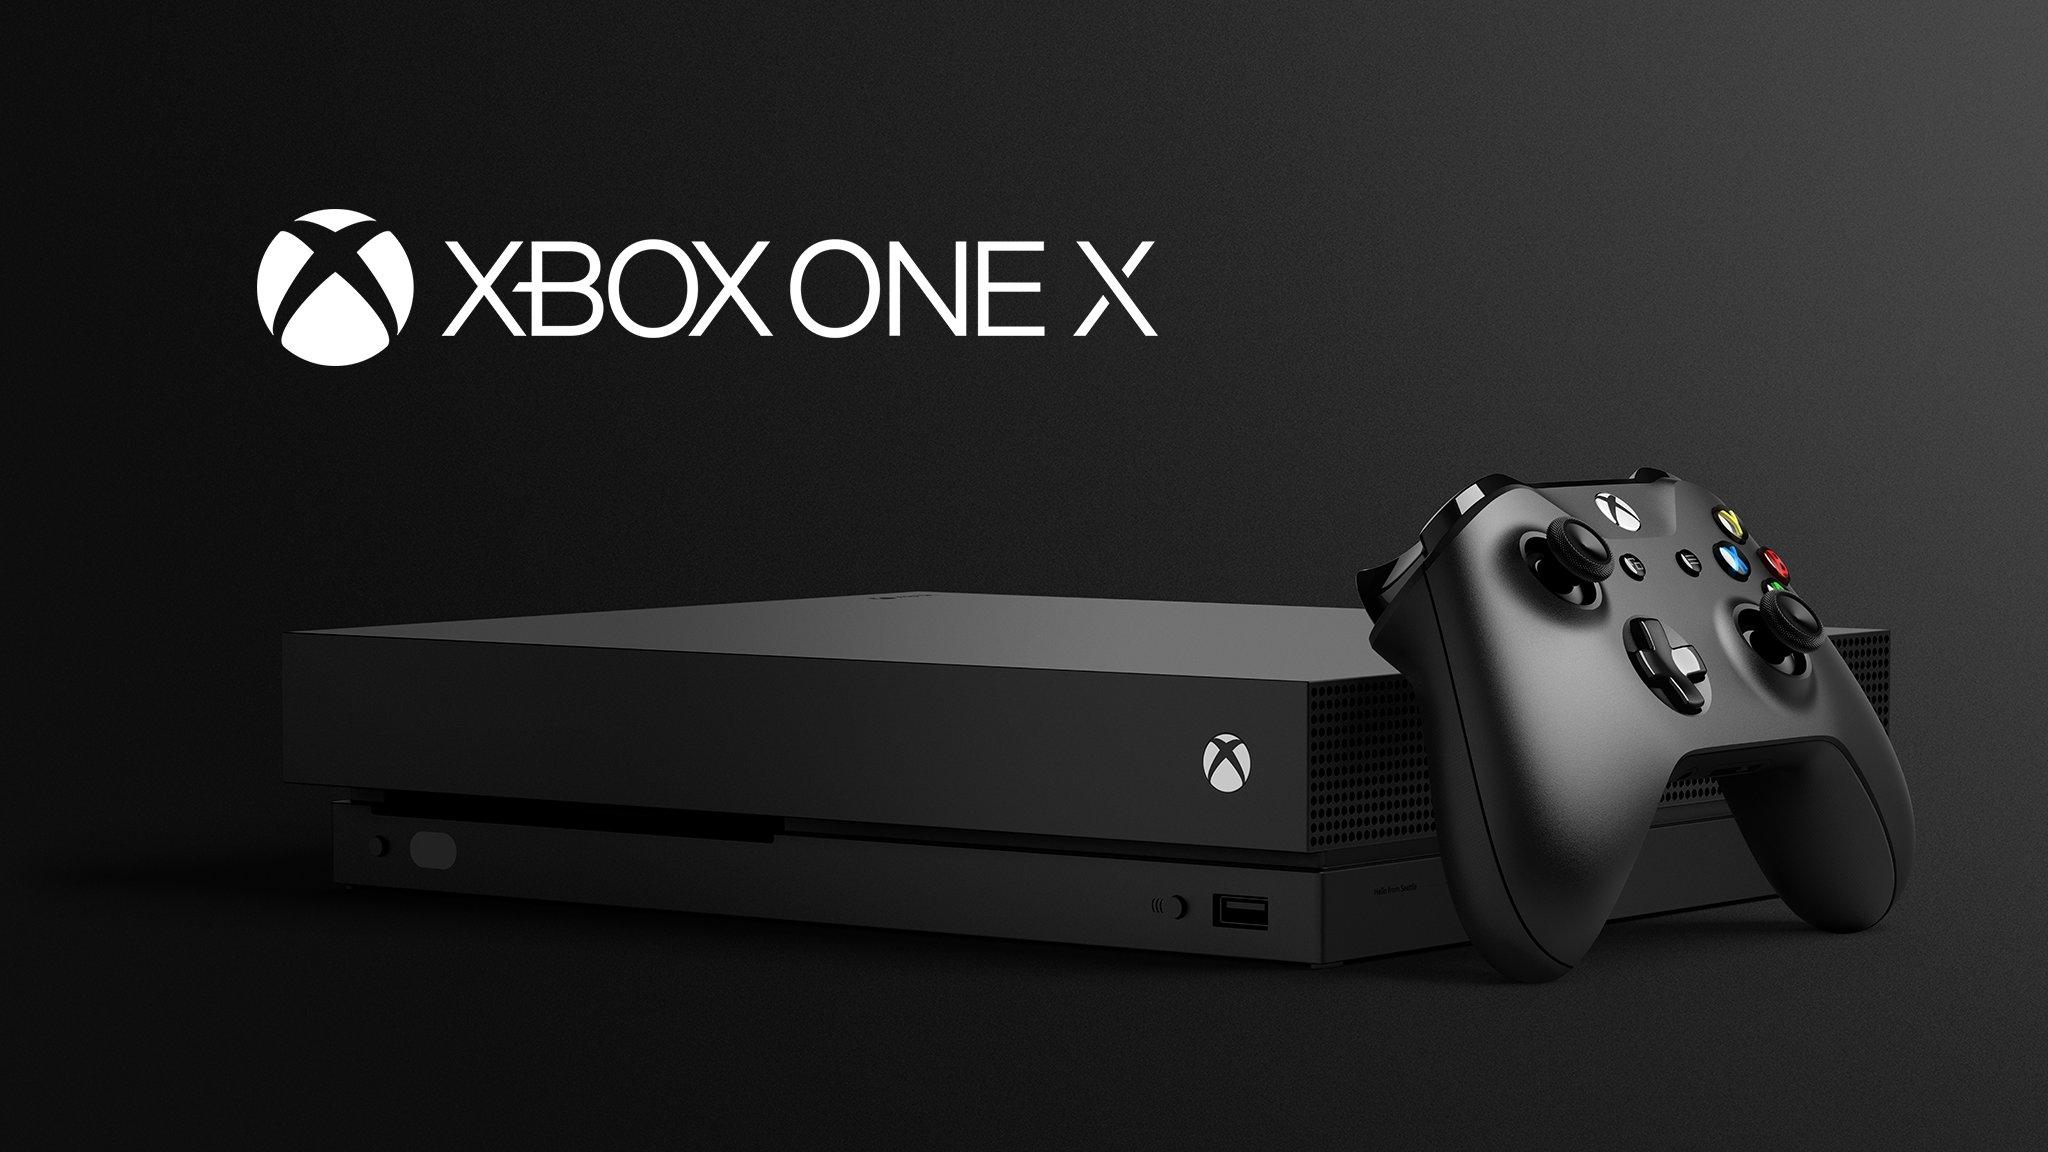 Xbox One X —революция в мире игровых приставок